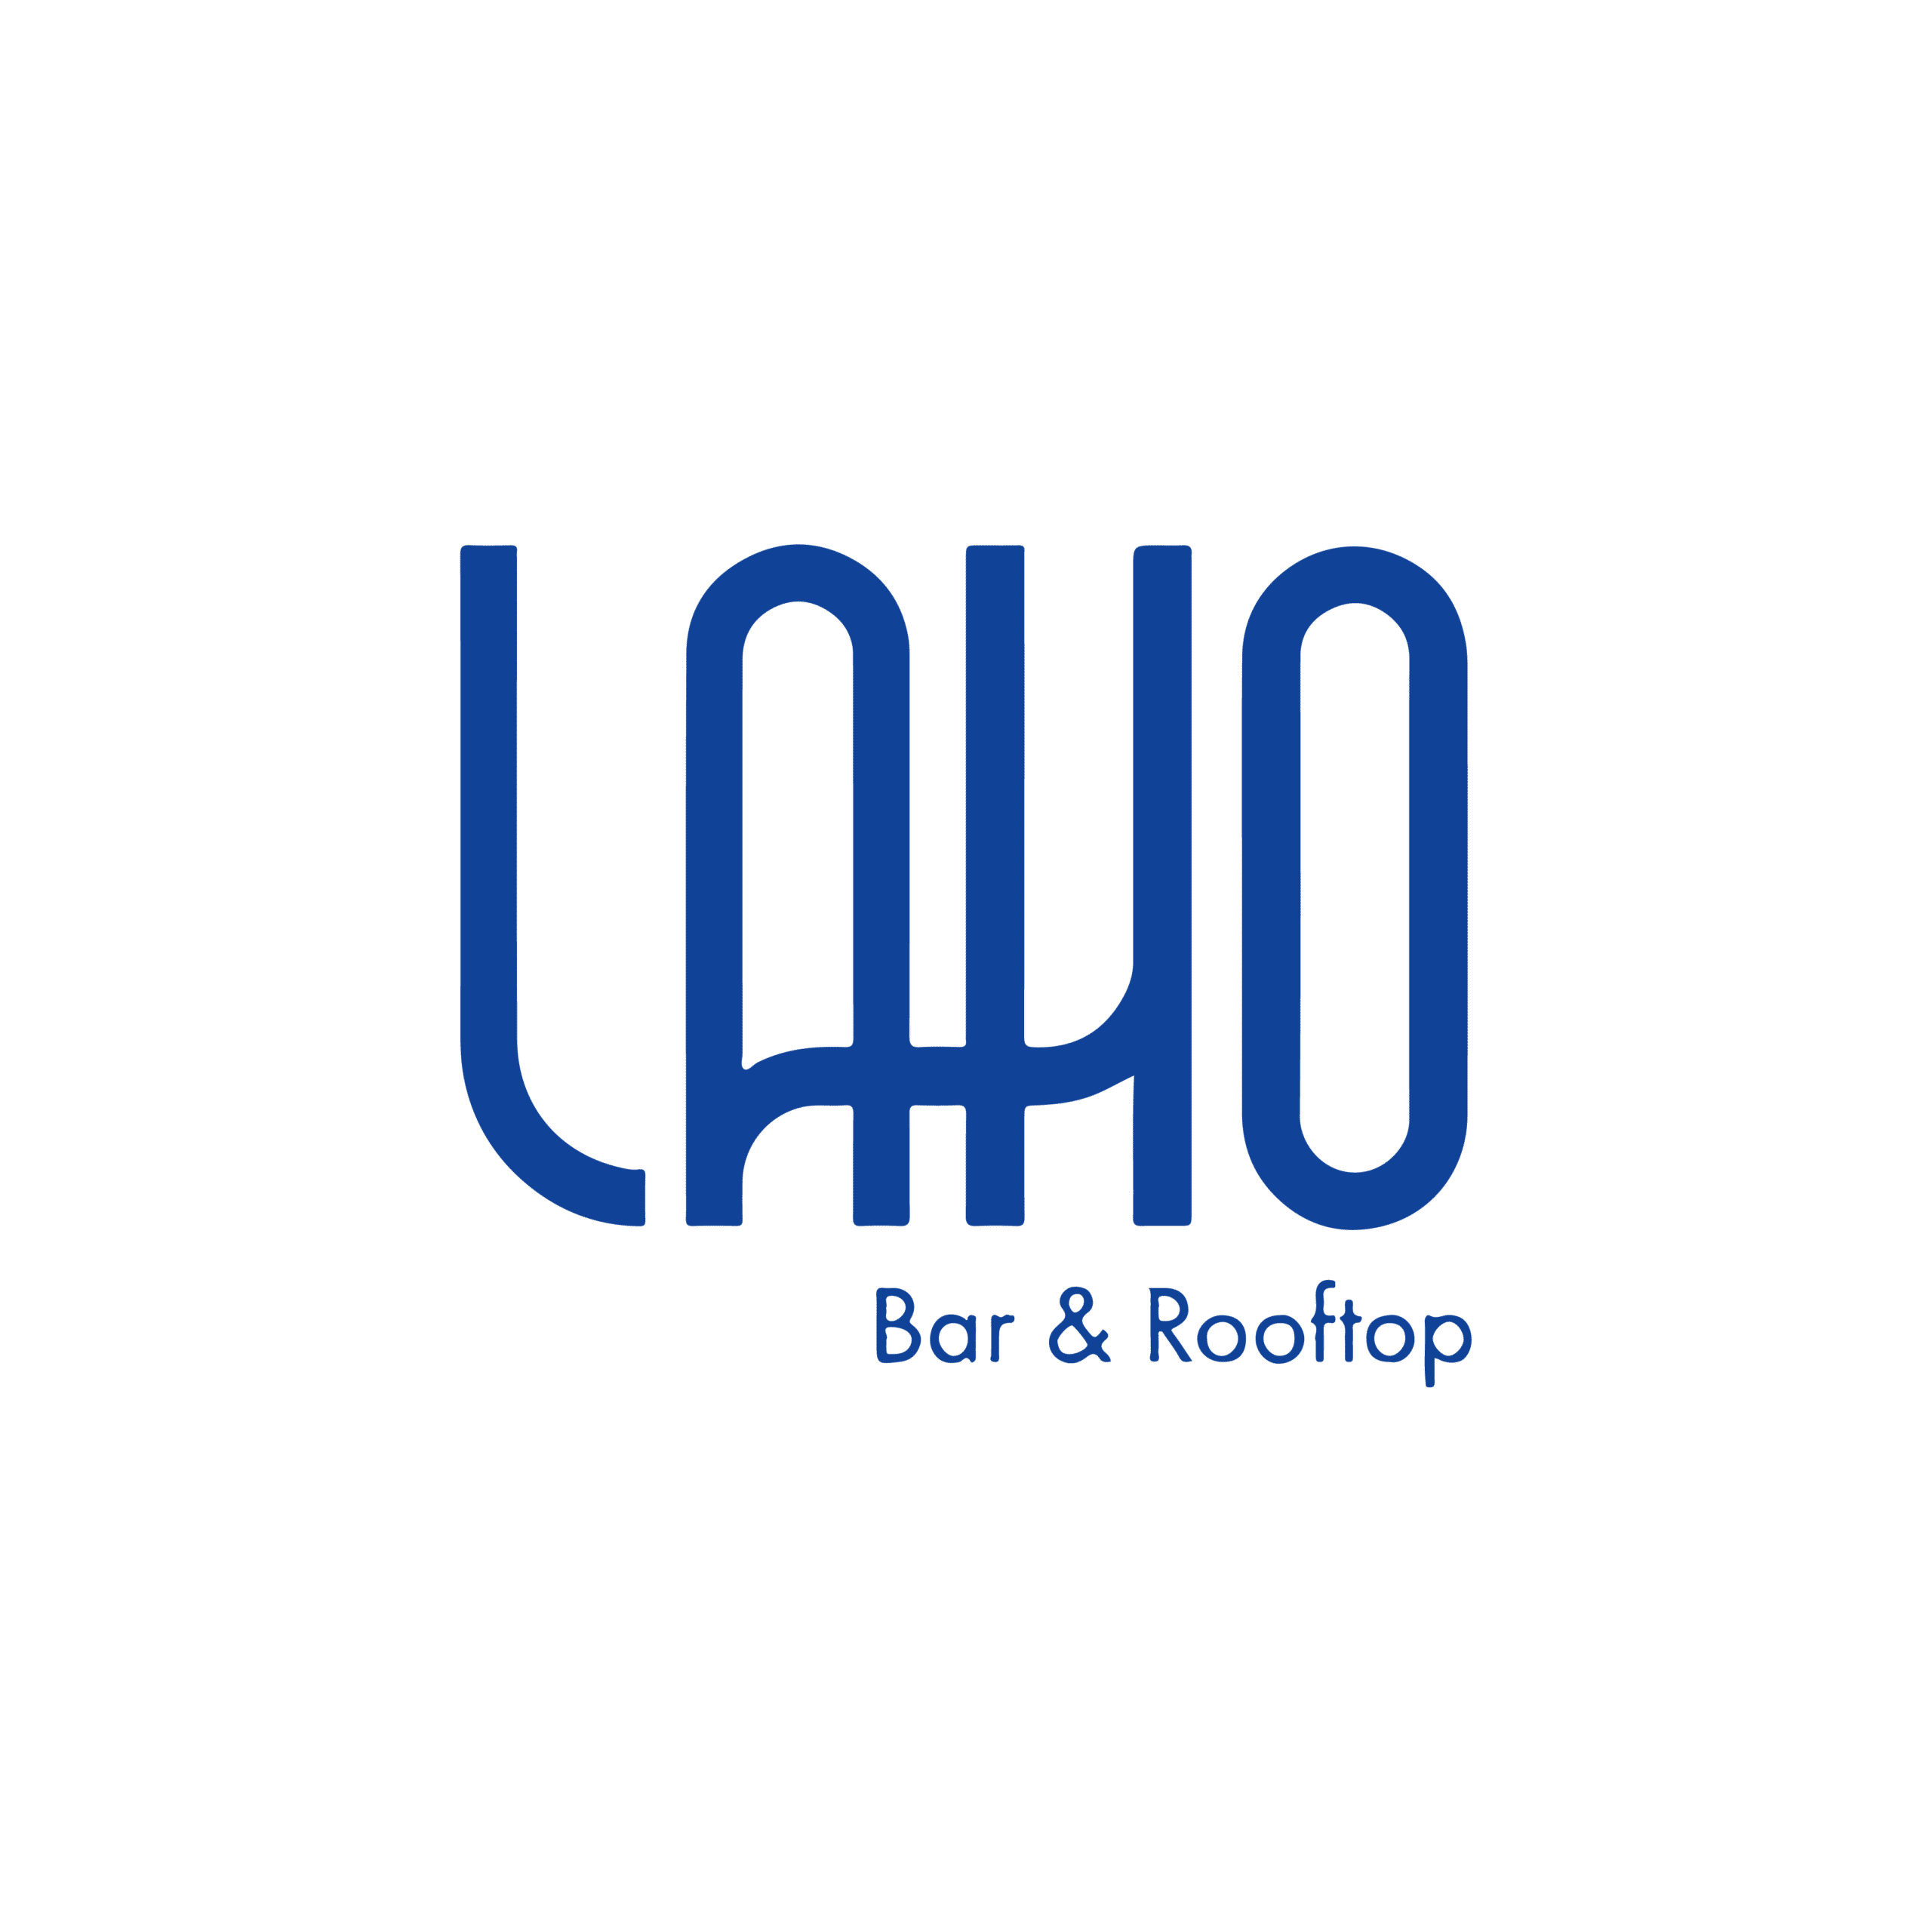 Le logo du bar lakho et du toit.